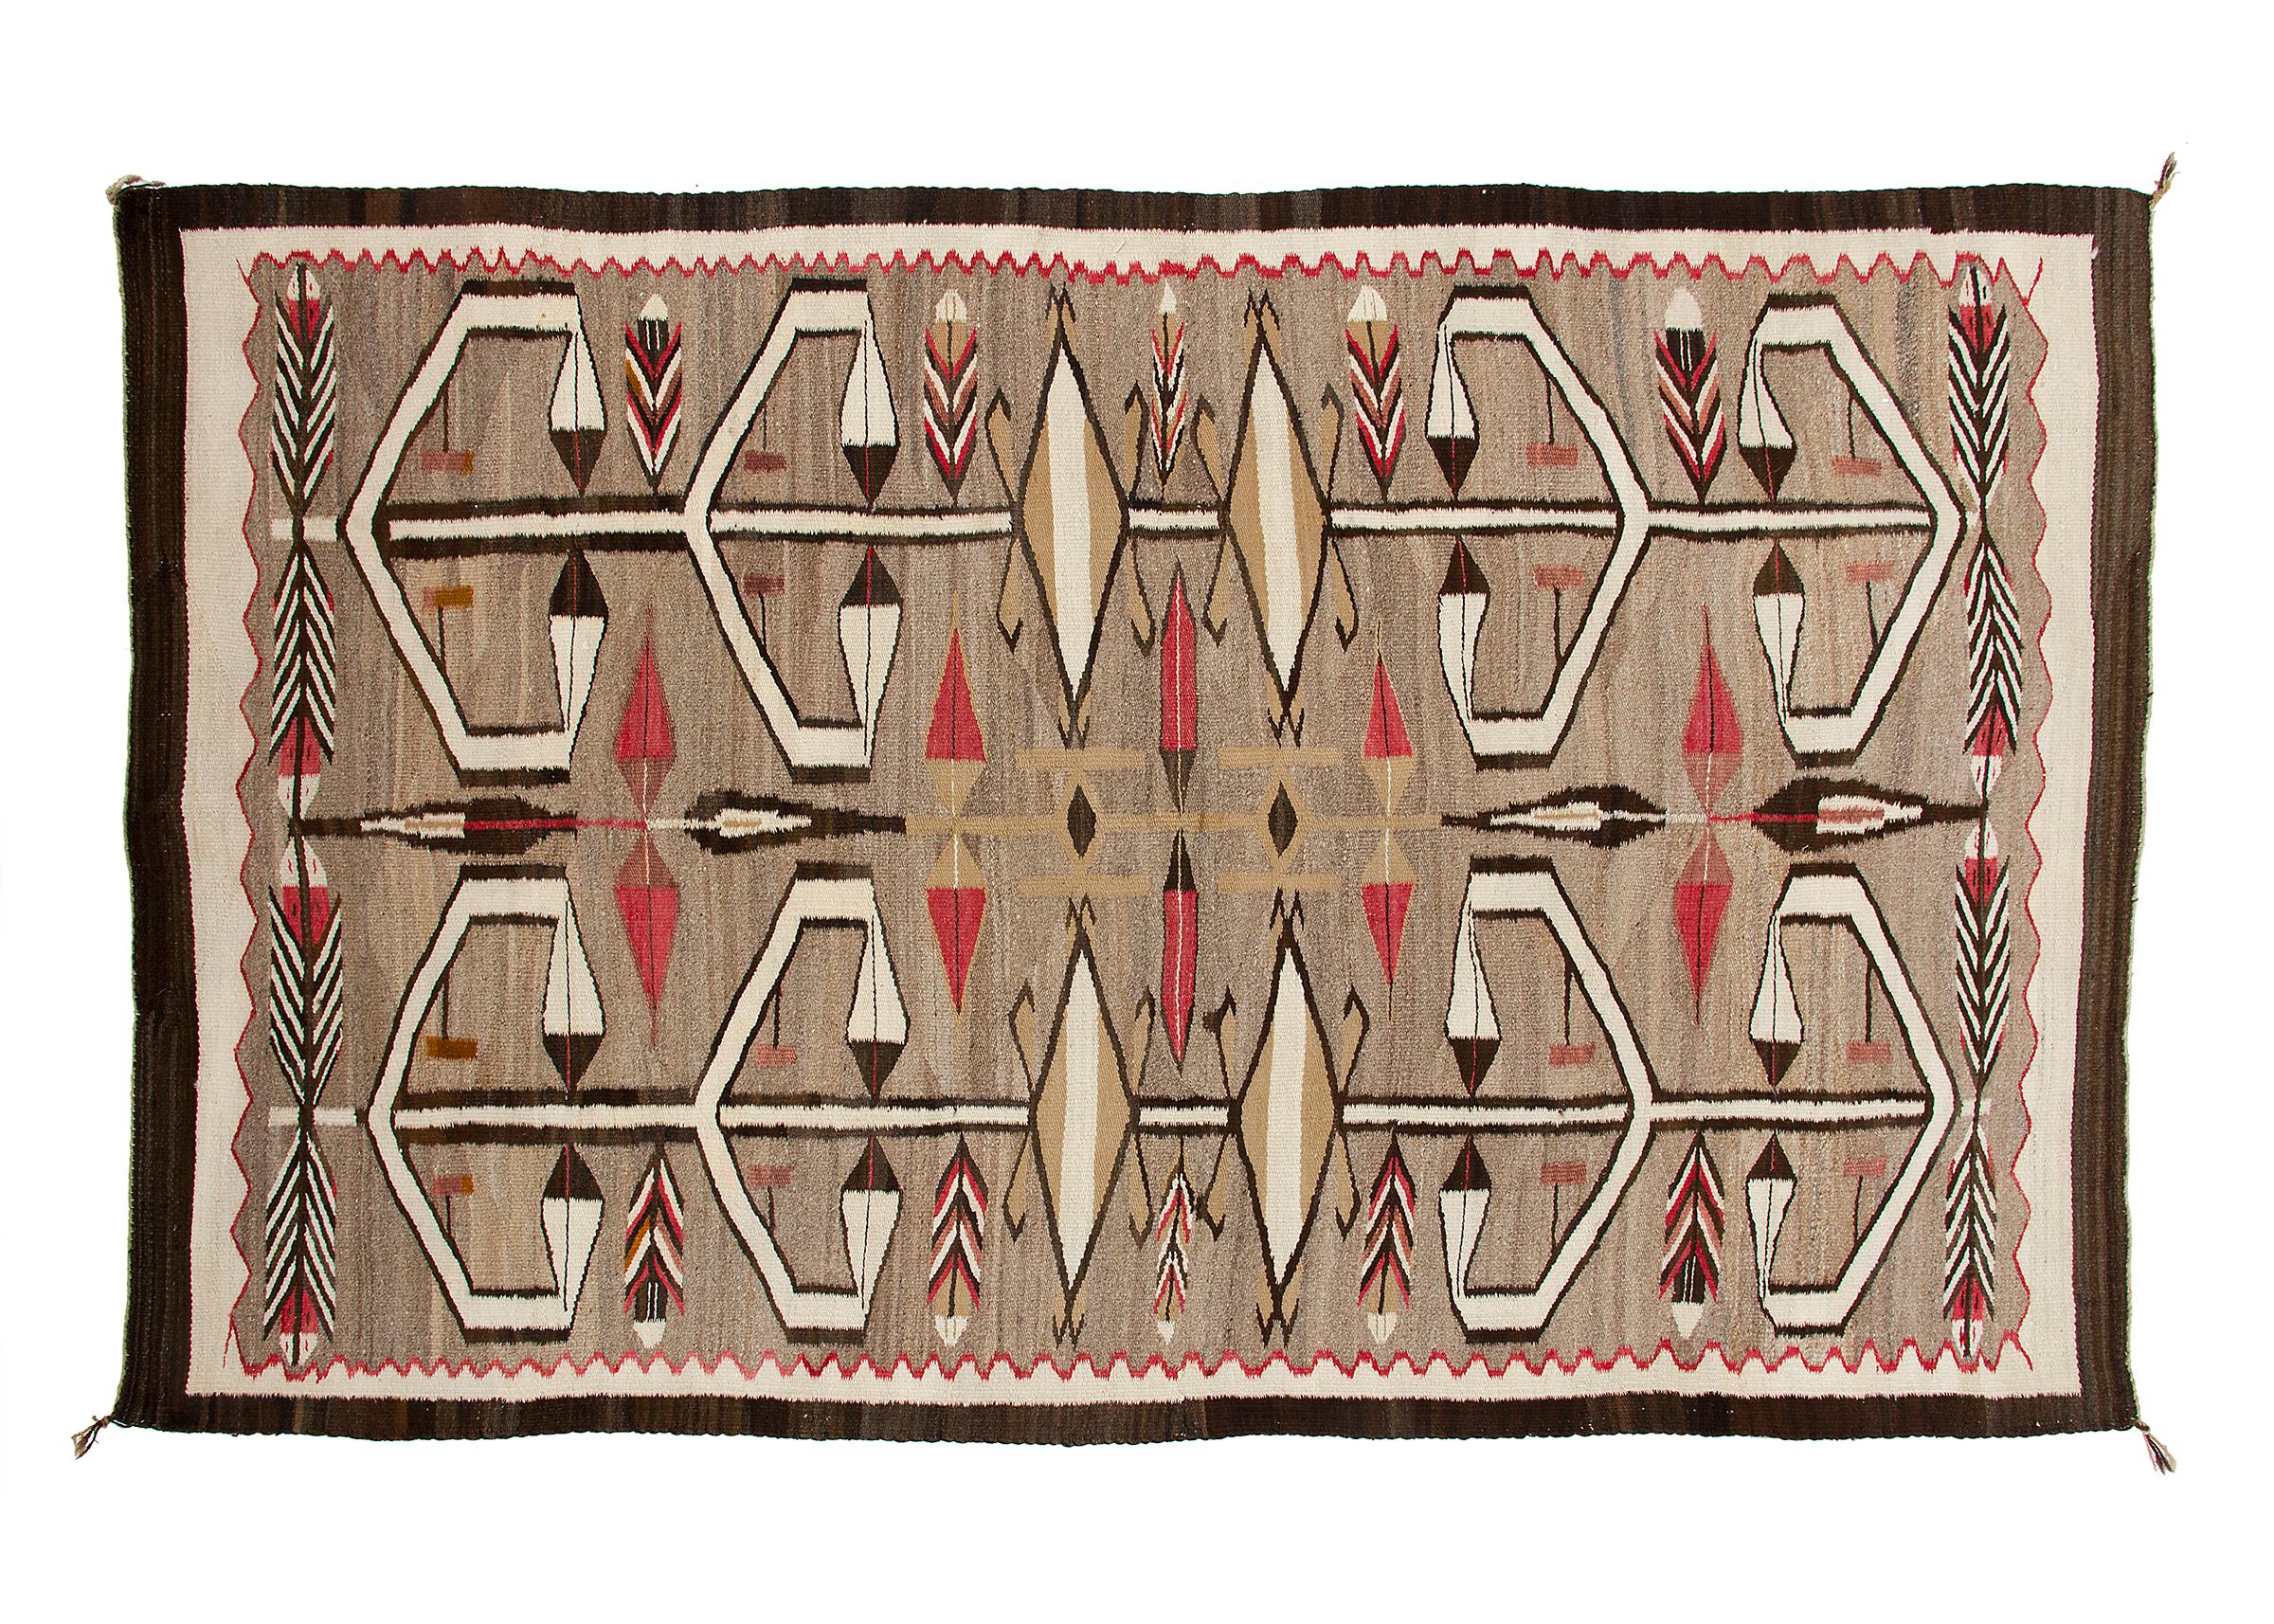 Tapis Navajo vintage des années 1930 provenant du Crystal Trading Post (J.B. Moore) à Crystal:: Nouveau Mexique. Les éléments picturaux comprennent des plumes et des flèches. Tissé en laine indigène filée à la main dans les couleurs naturelles de la